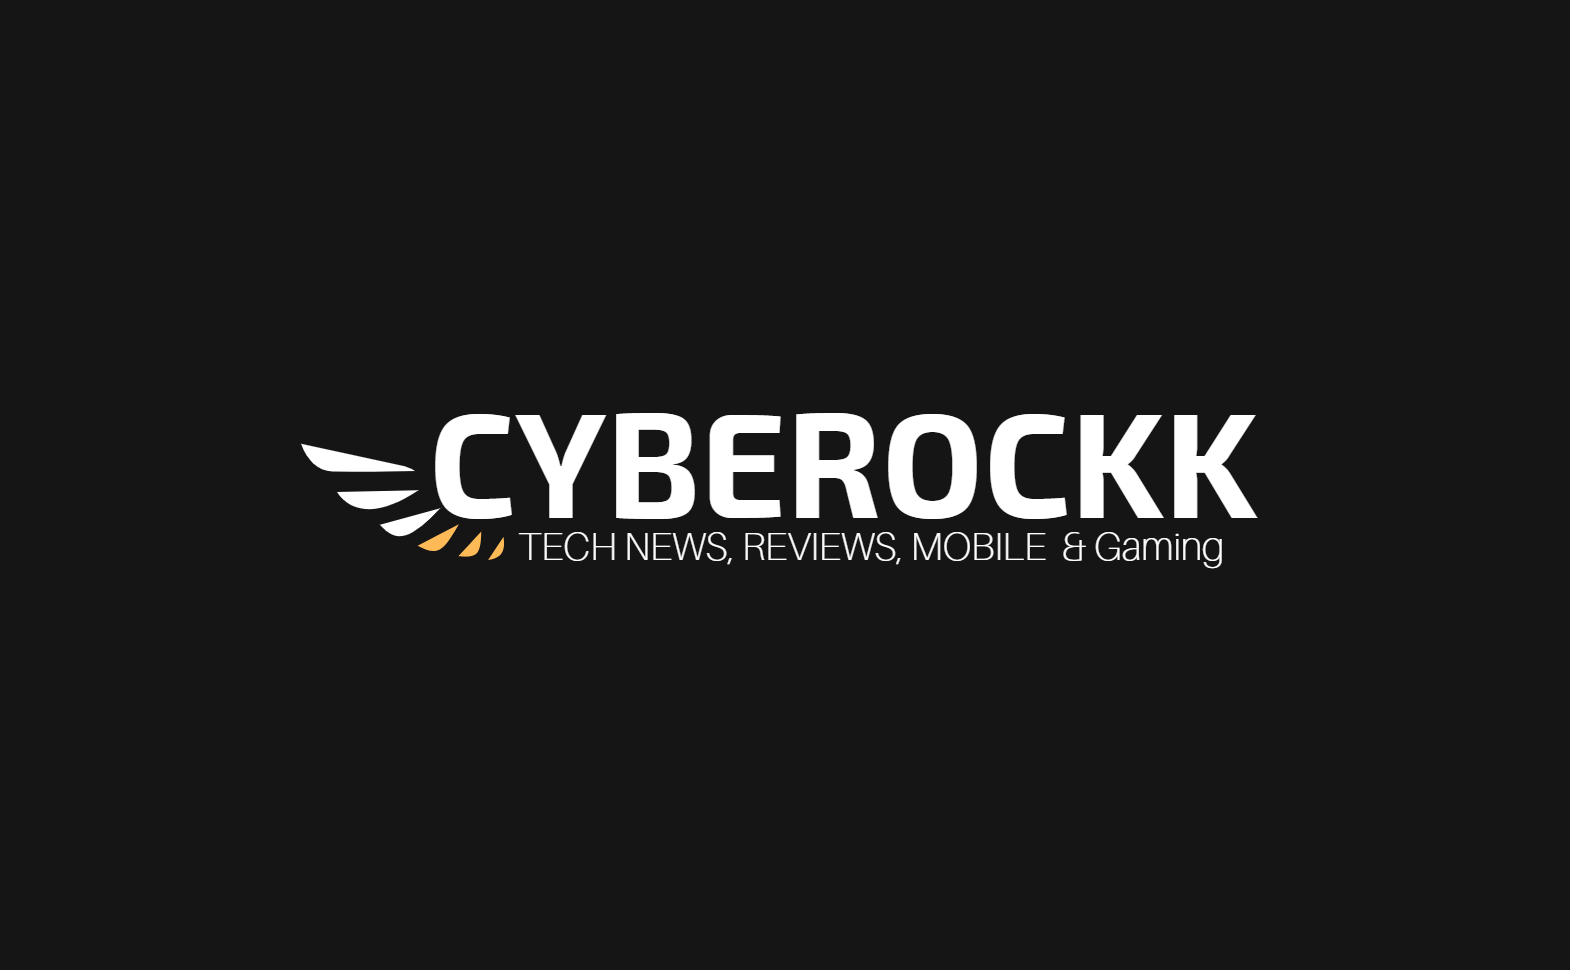 Avatar - Cyberockk